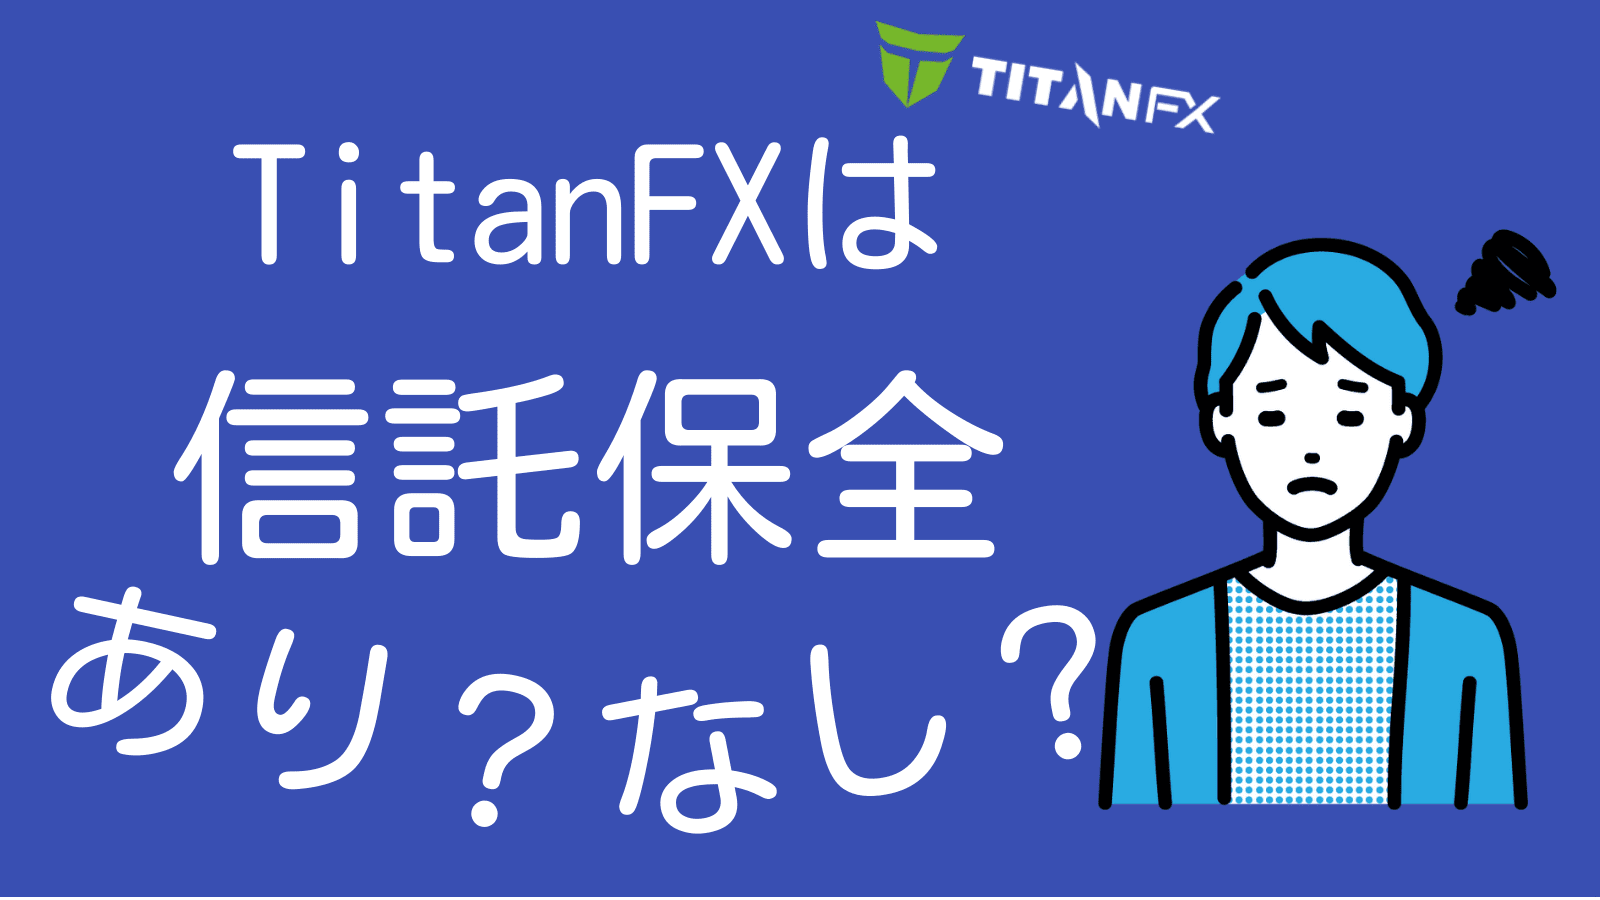 TitanFXは信託保全をしているのかどうか